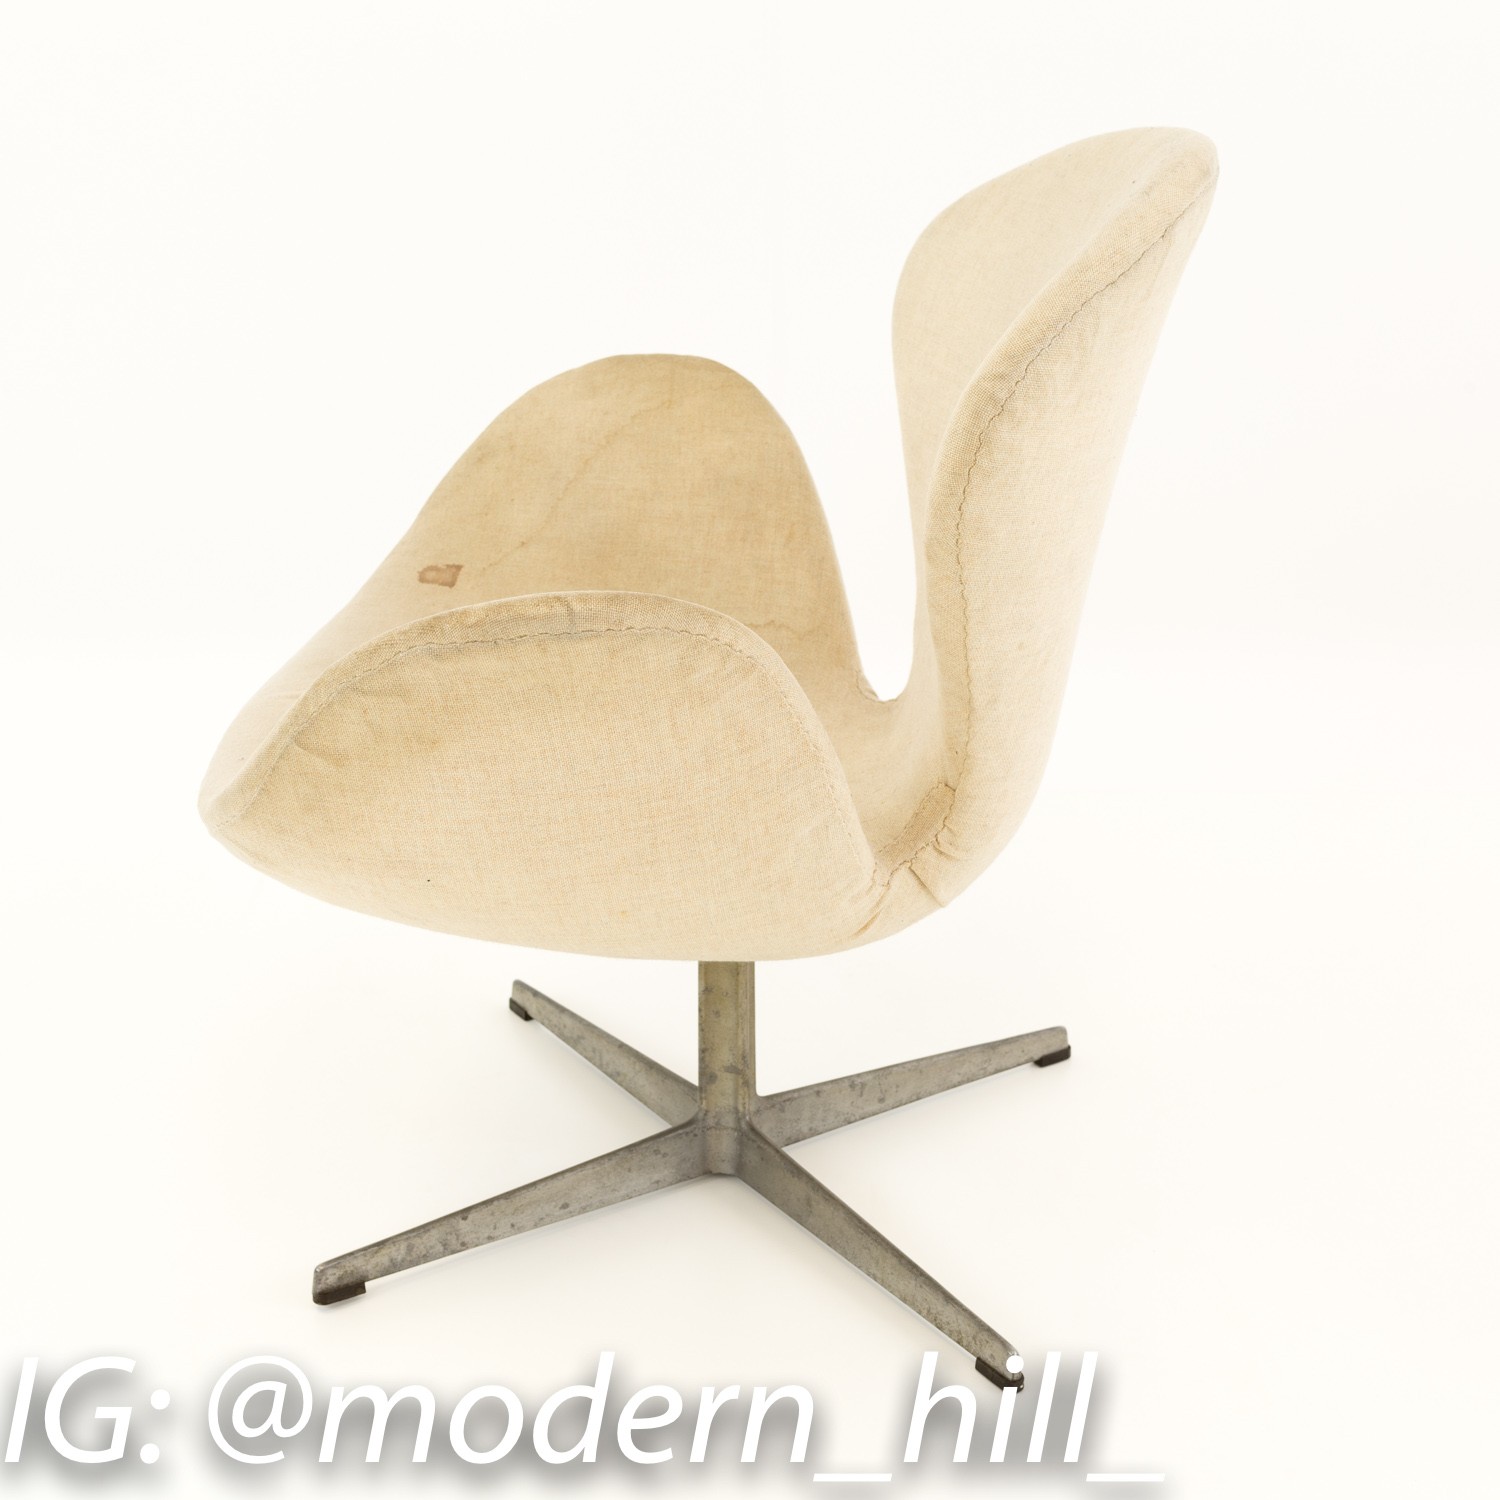 Early Arne Jacobsen for Fritz Hansen Swan Chair